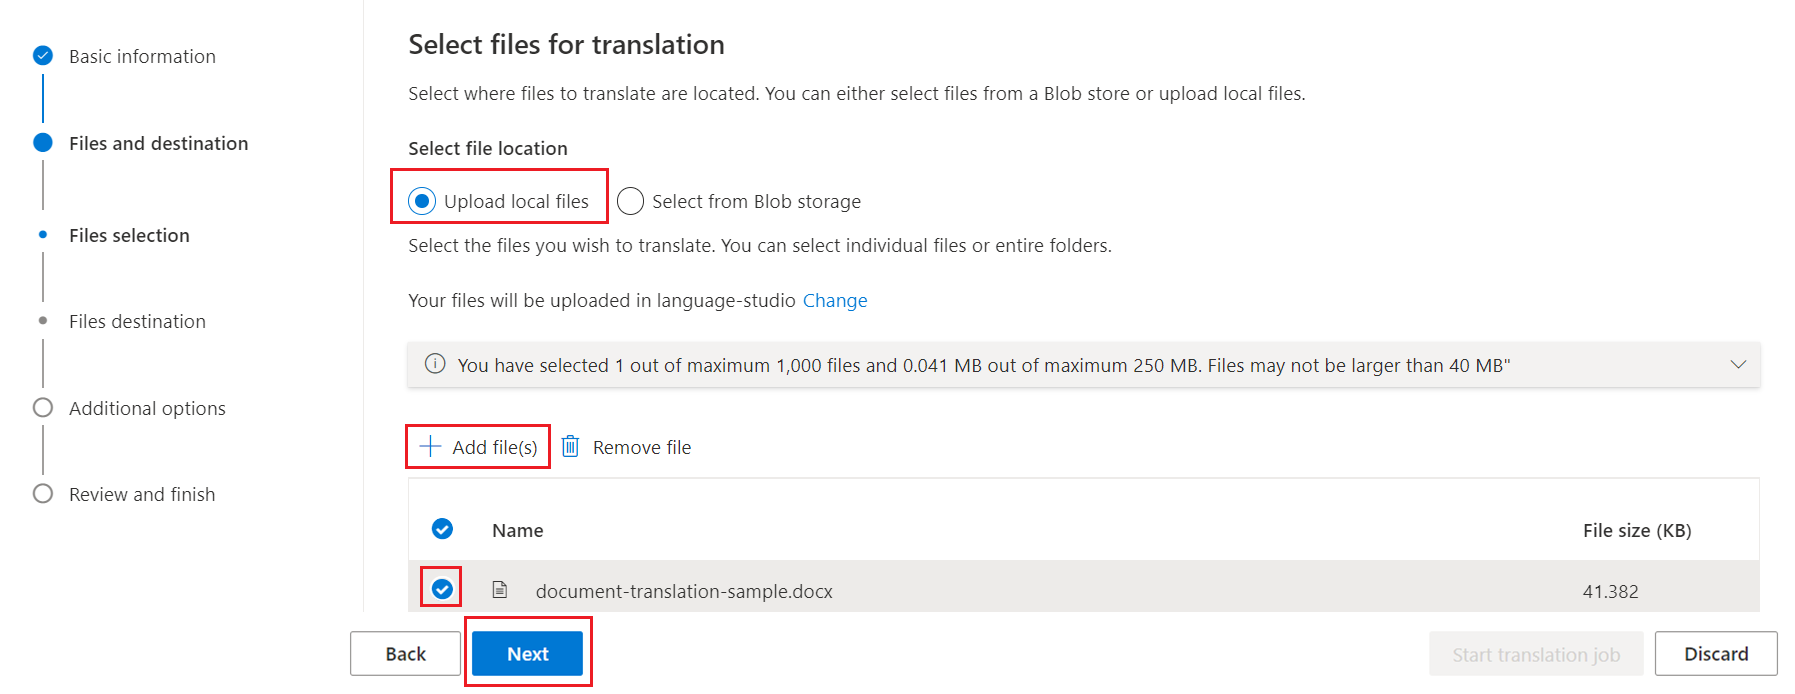 Capture d’écran de la page Sélectionner les fichiers pour la traduction.